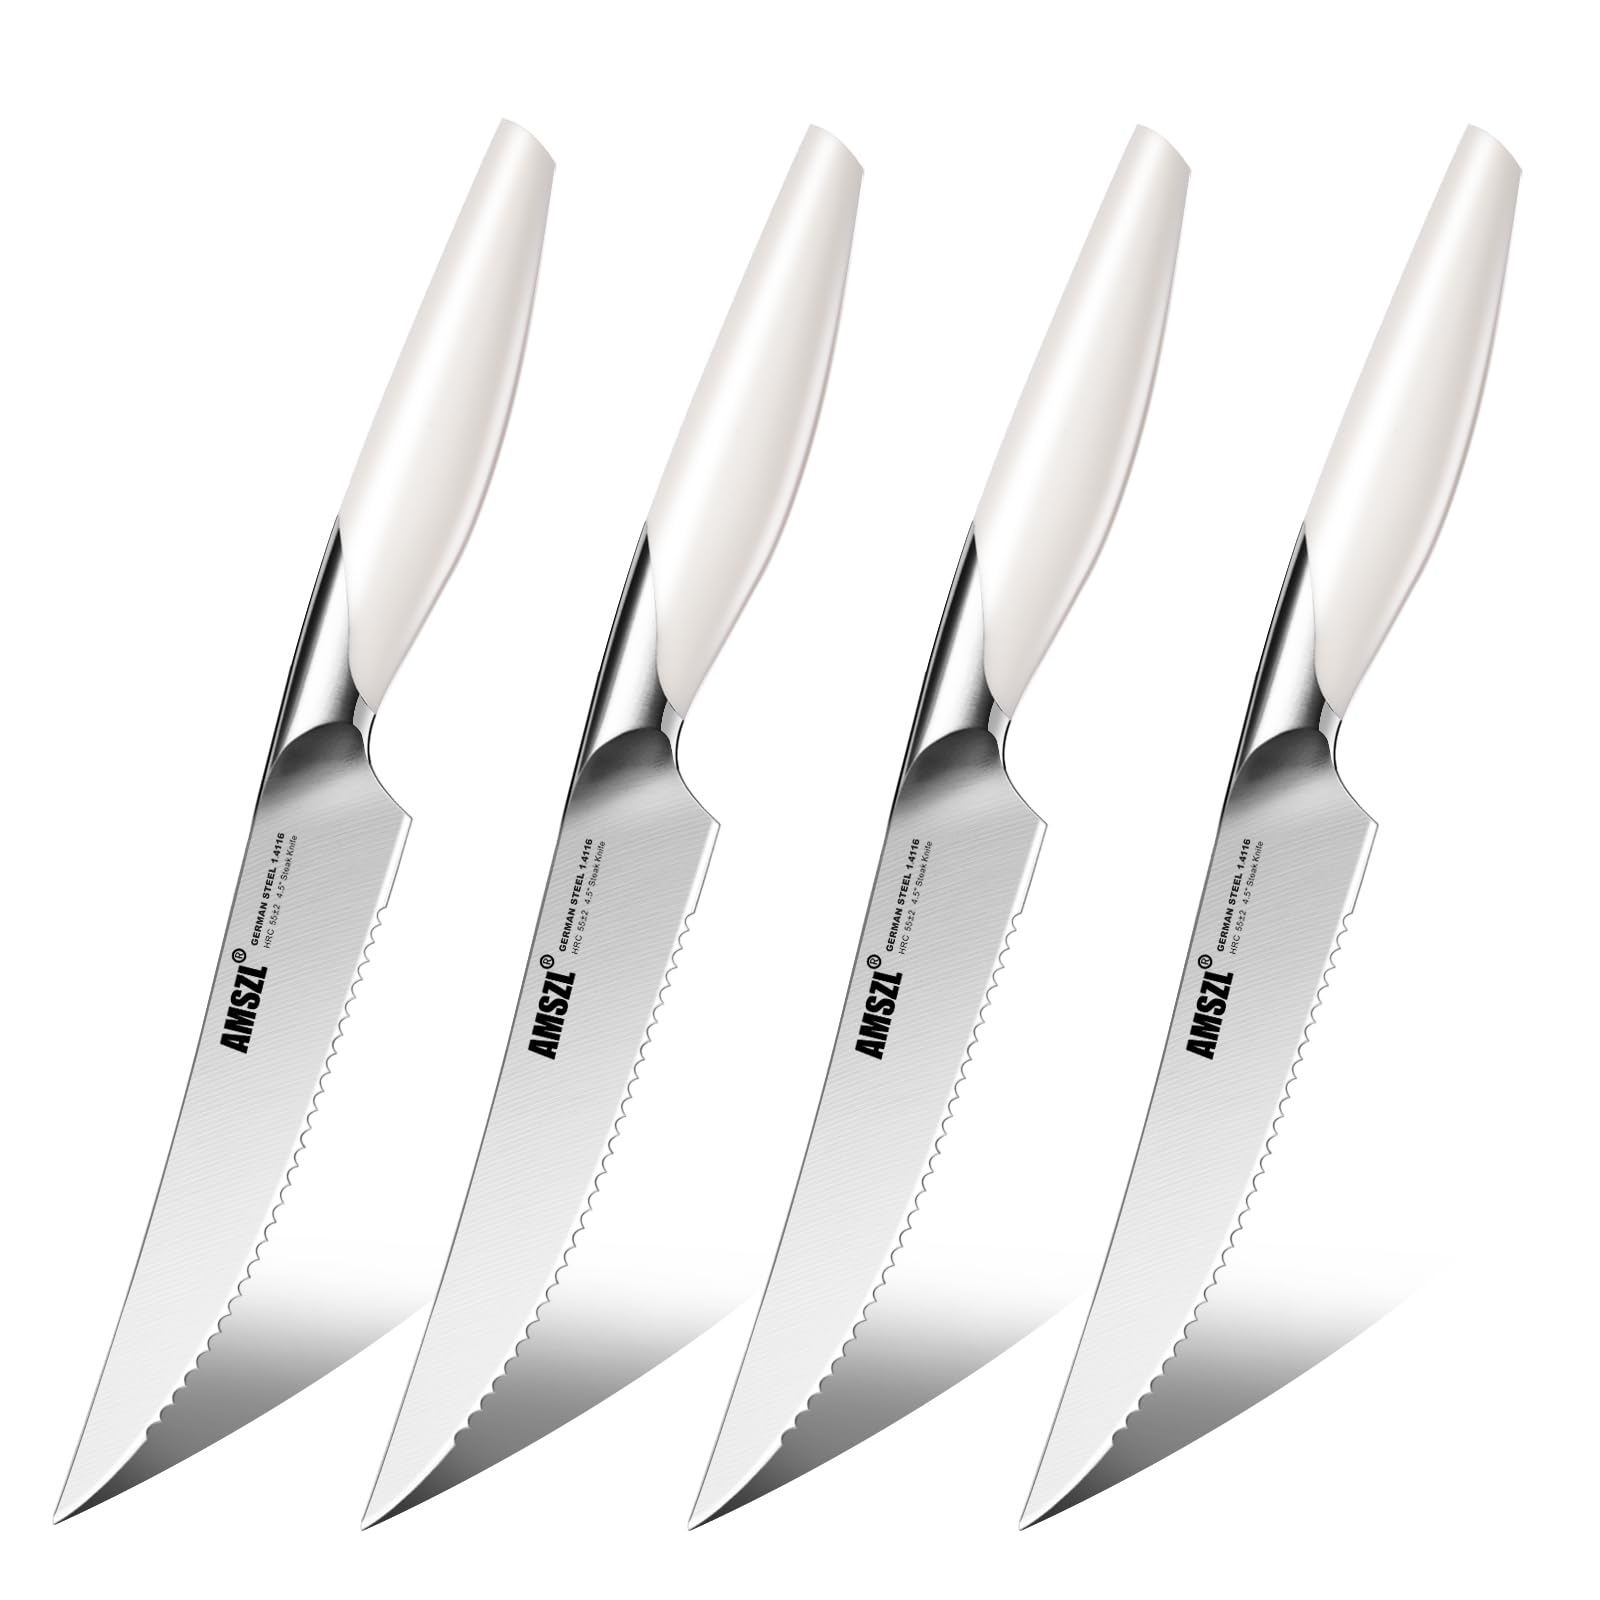 AMSZL Knife Set - Sharp Kitchen Knife Set of 5 - Dishwasher Safe Kitchen Knives - German Stainless Steel Chef Knife Set - Professional Knife Set - Cooking Knife Set - Cutting Knife Set